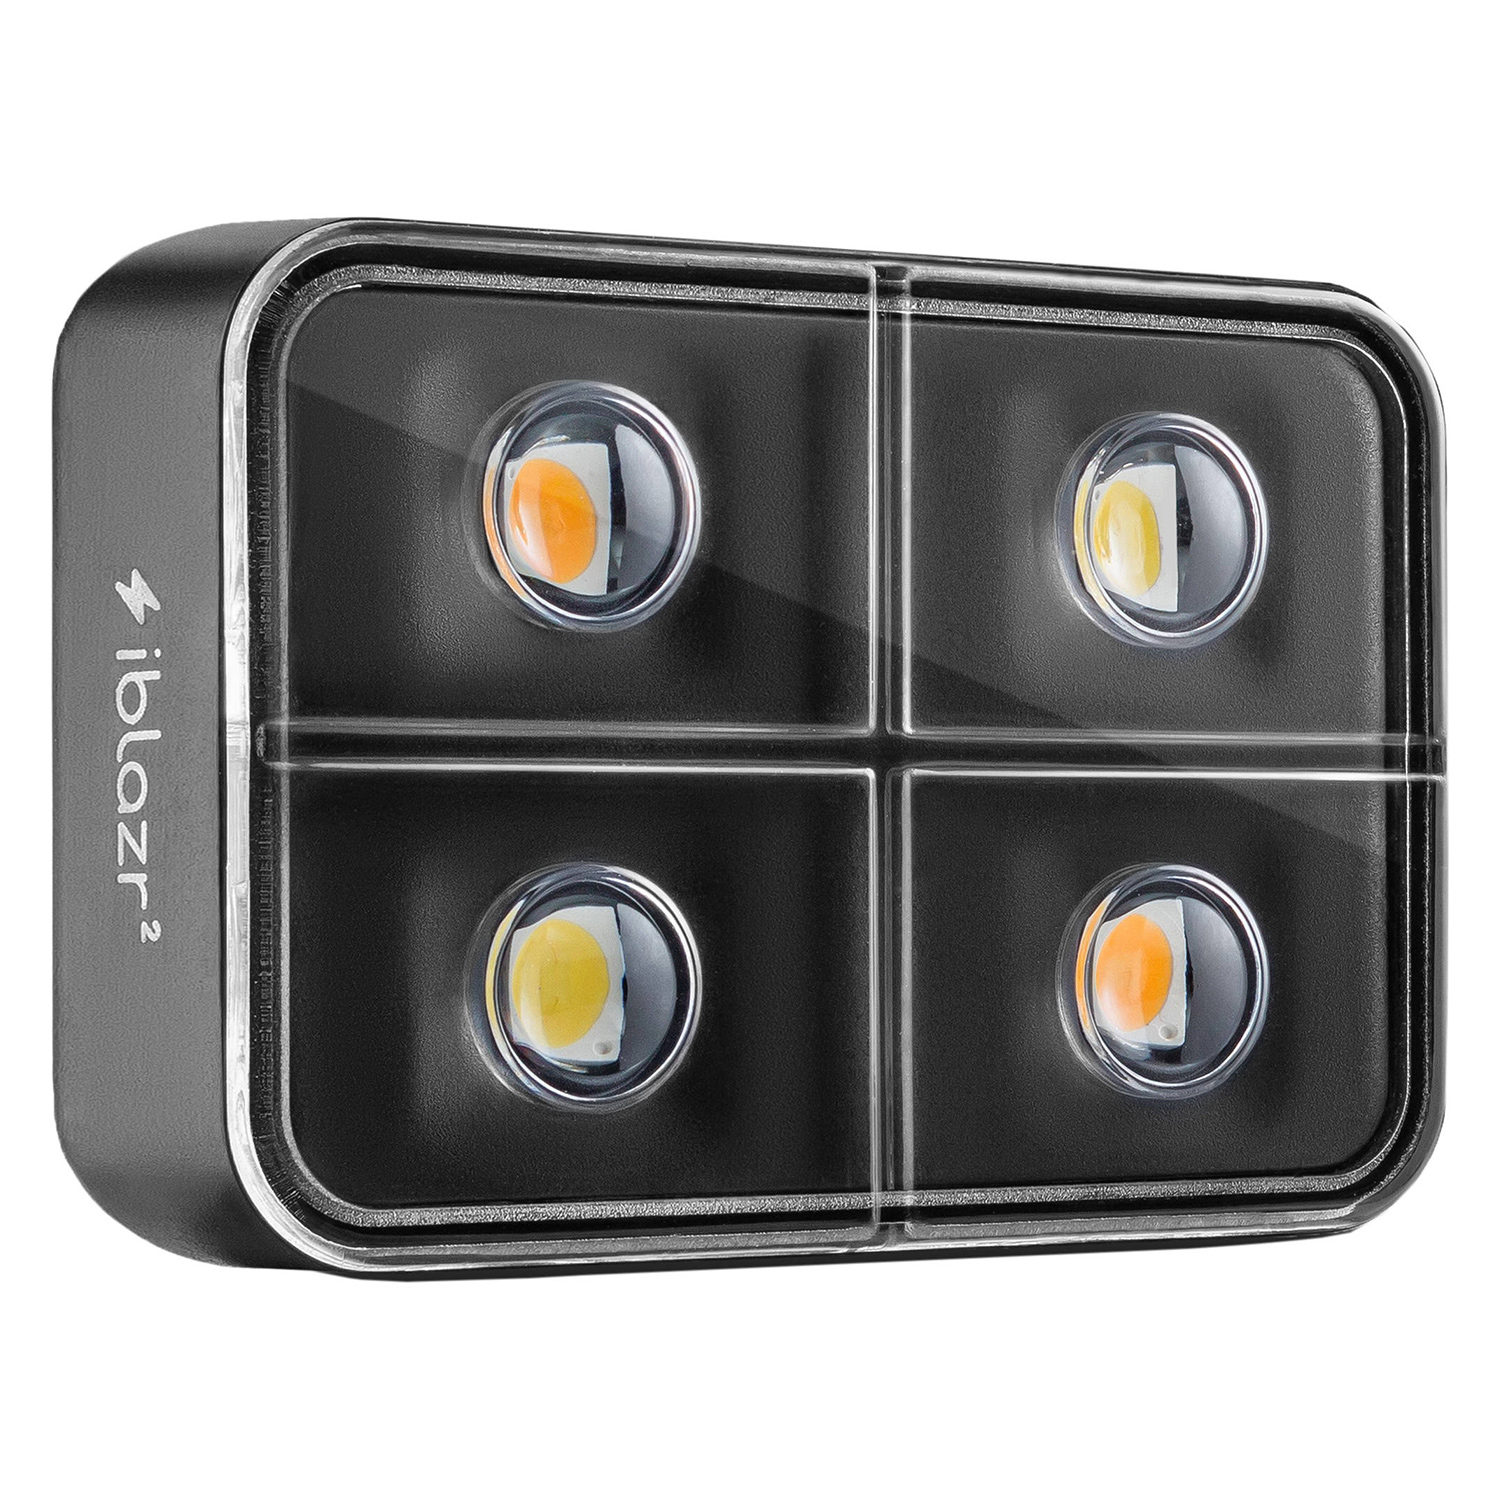 Image of iBlazr 2 draadloze LED-flitser voor smartphones en tablets Zwart